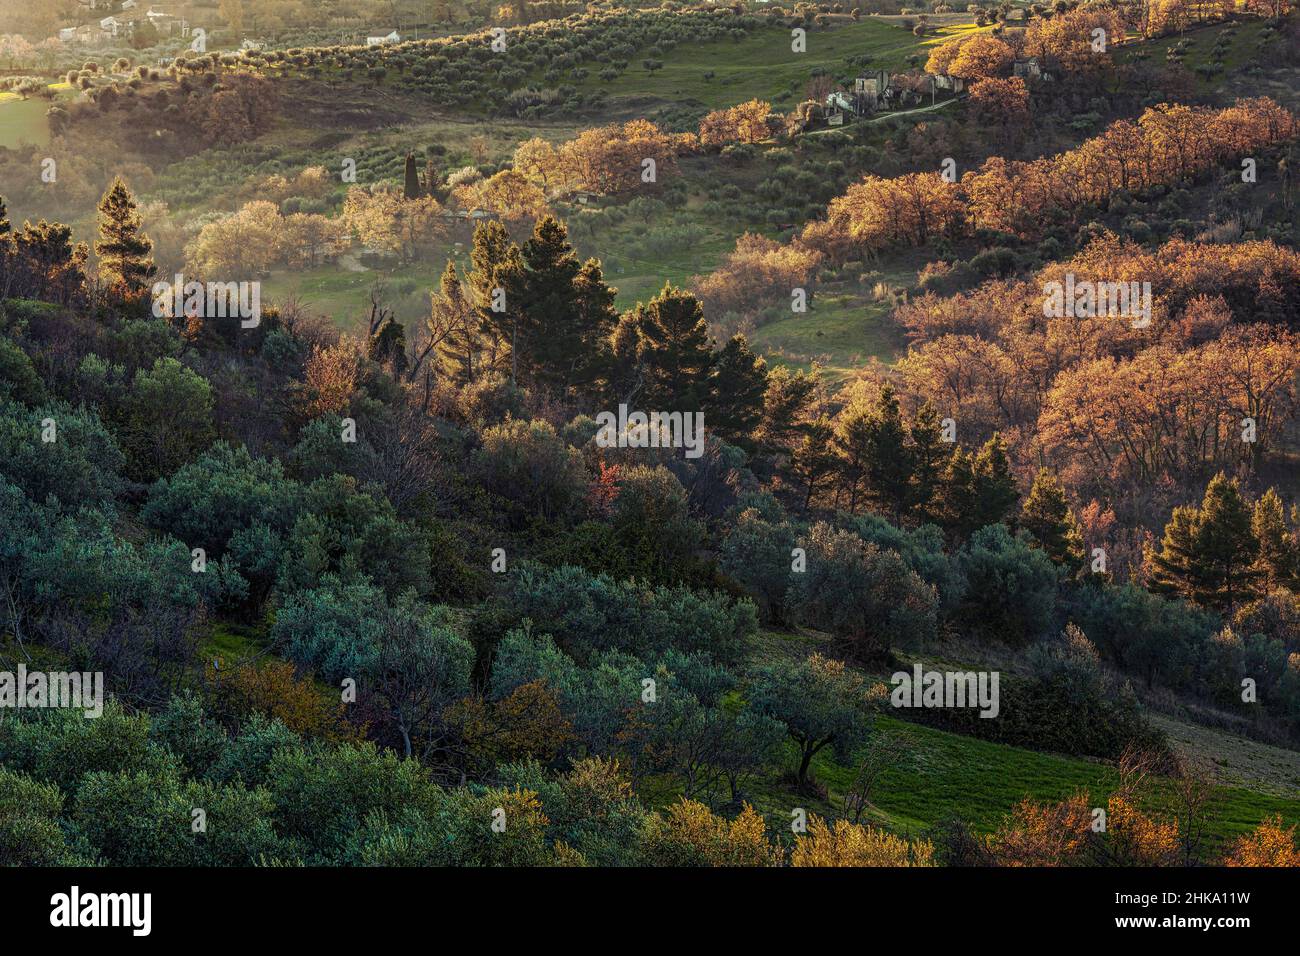 Paysage vallonné avec bois et oliveraies illuminés par la lumière d'hiver du matin.Alanno, province de Pescara, Abruzzes, Italie, Europe Banque D'Images